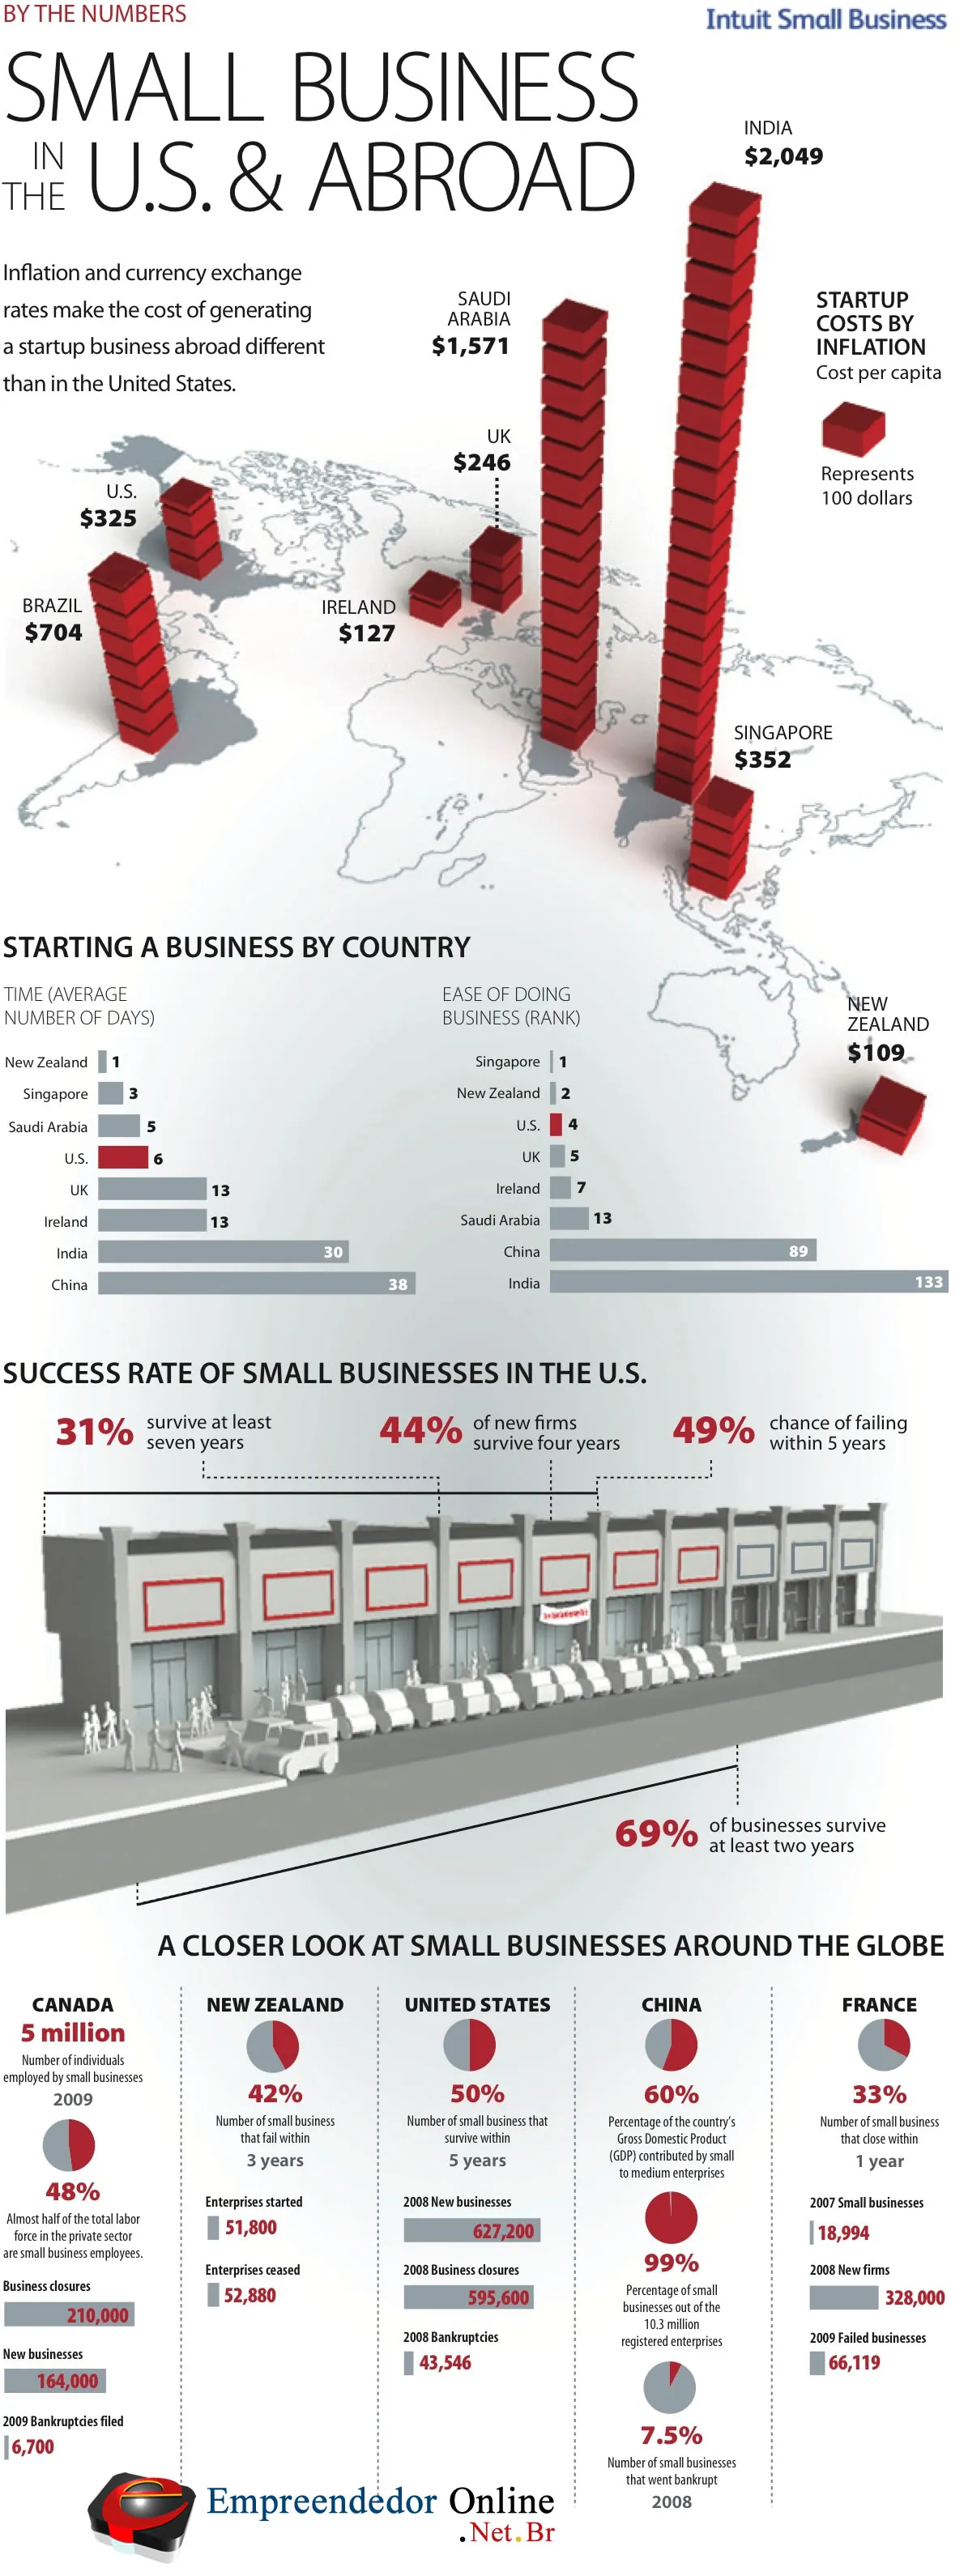 Veja neste infográfico sobre empreendedorismo no mundo um panorâma sobre o universo do empreendedor em diversos países